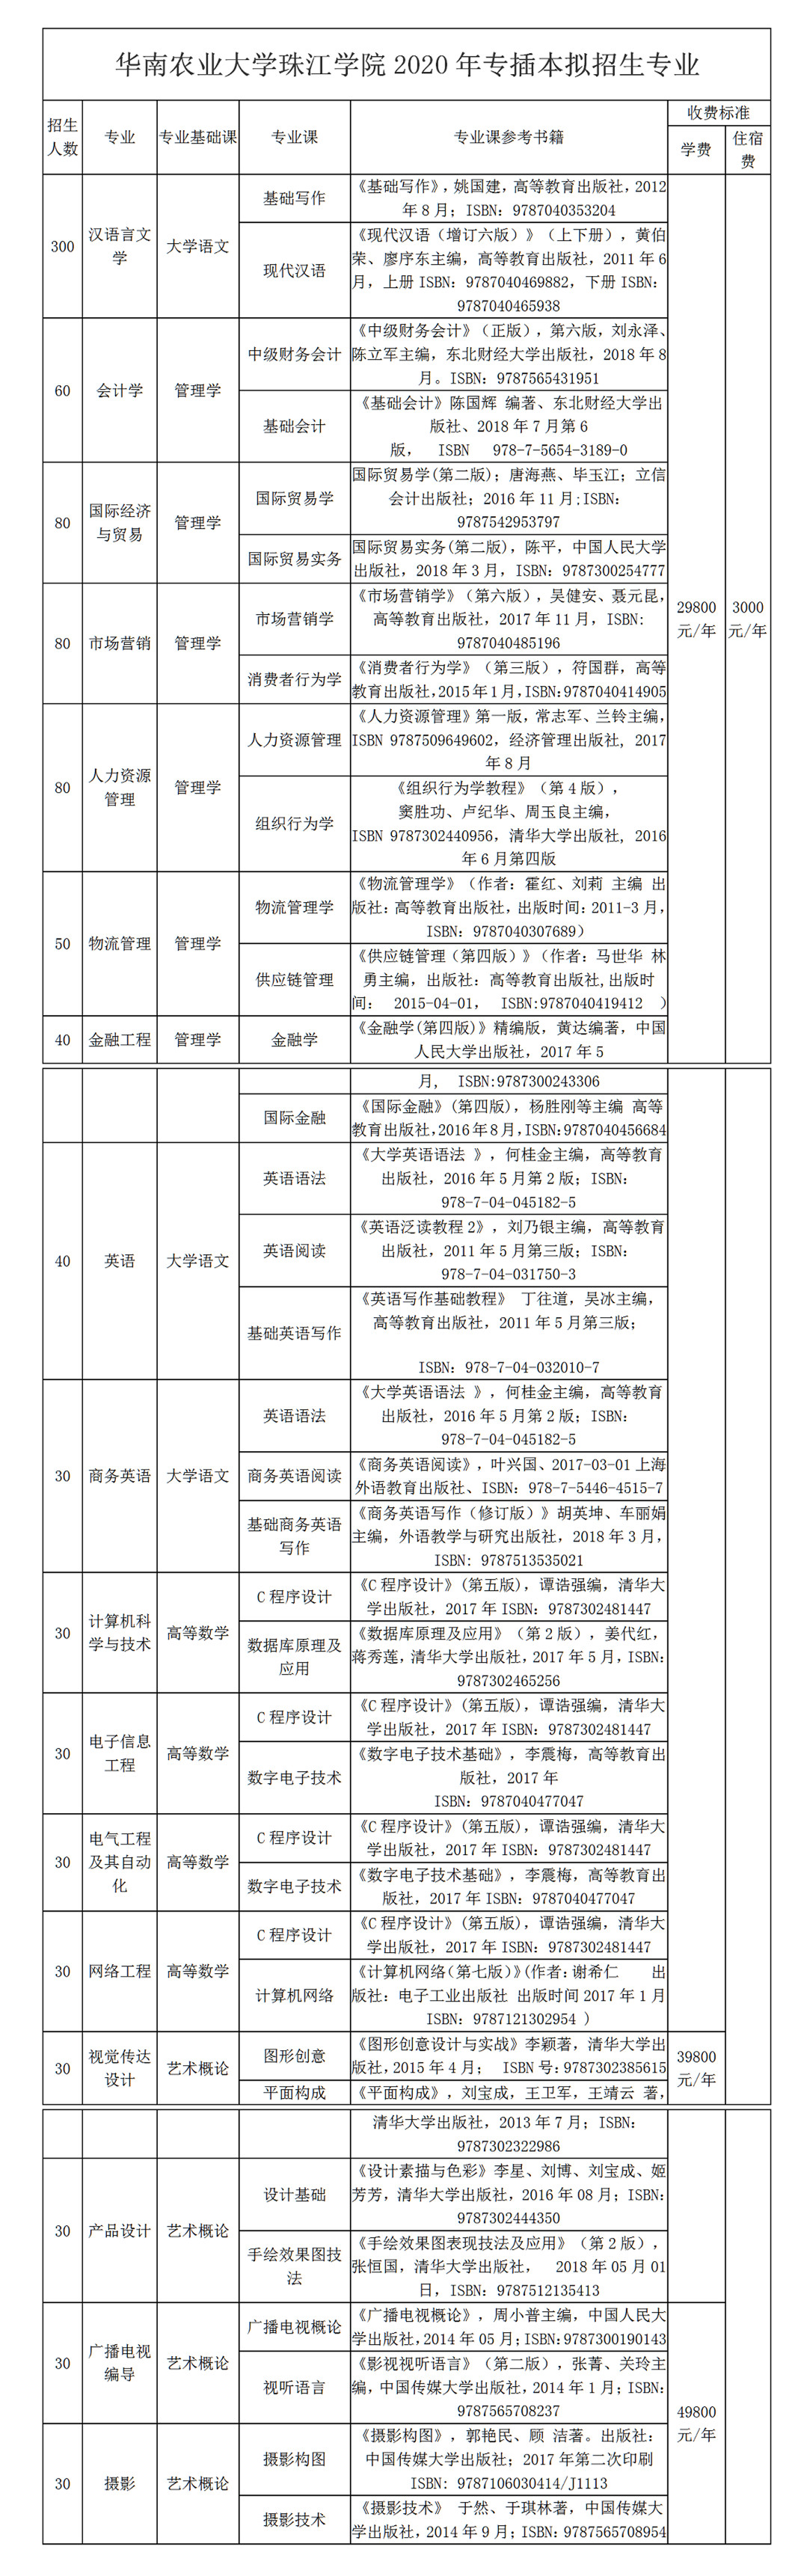 专插本学校——华南农业大学珠江学院(图2)